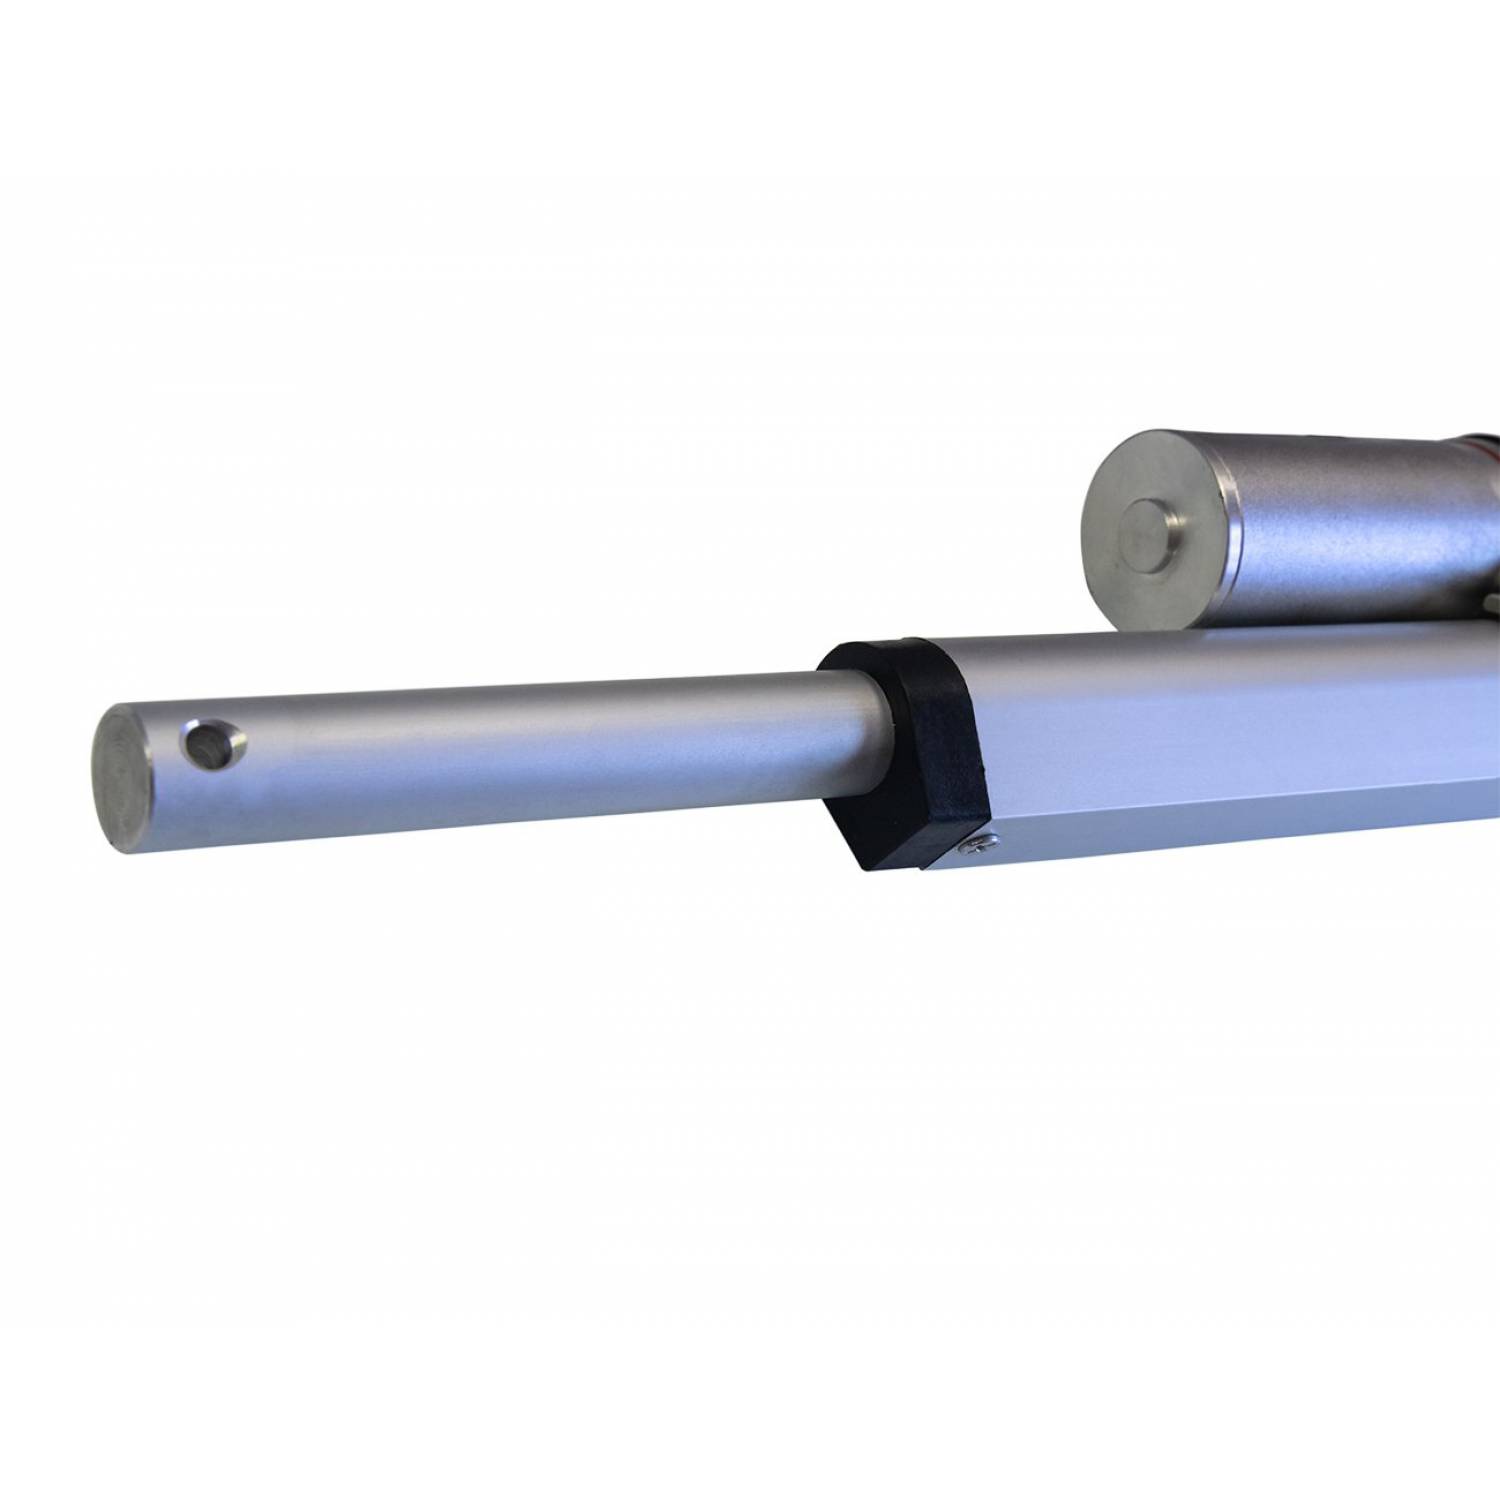 Актуатор (линейный привод) длина 150 мм, питание 12 вольт , нагрузка до 130 кг, скорость 7 мм/сек